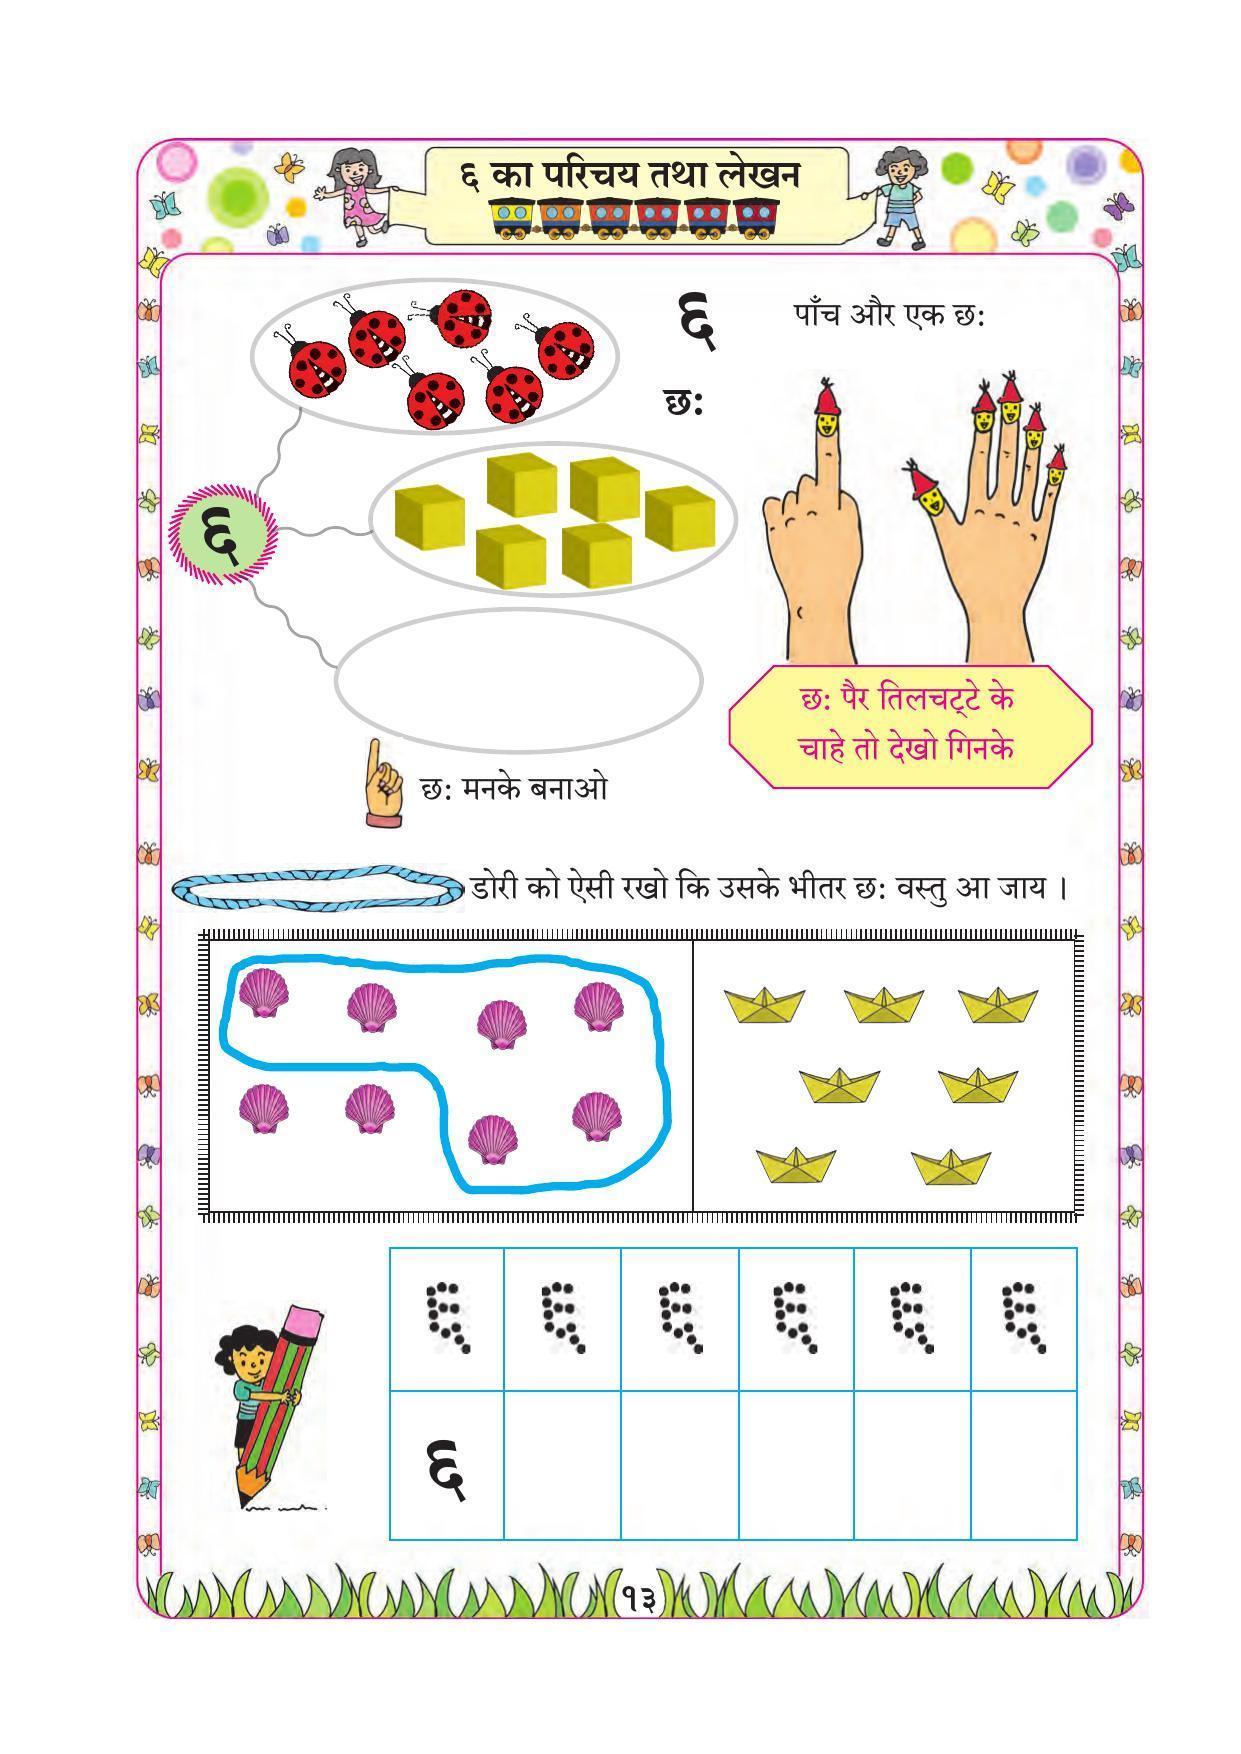 Maharashtra Board Class 1 Maths (Hindi Medium) Textbook - Page 23